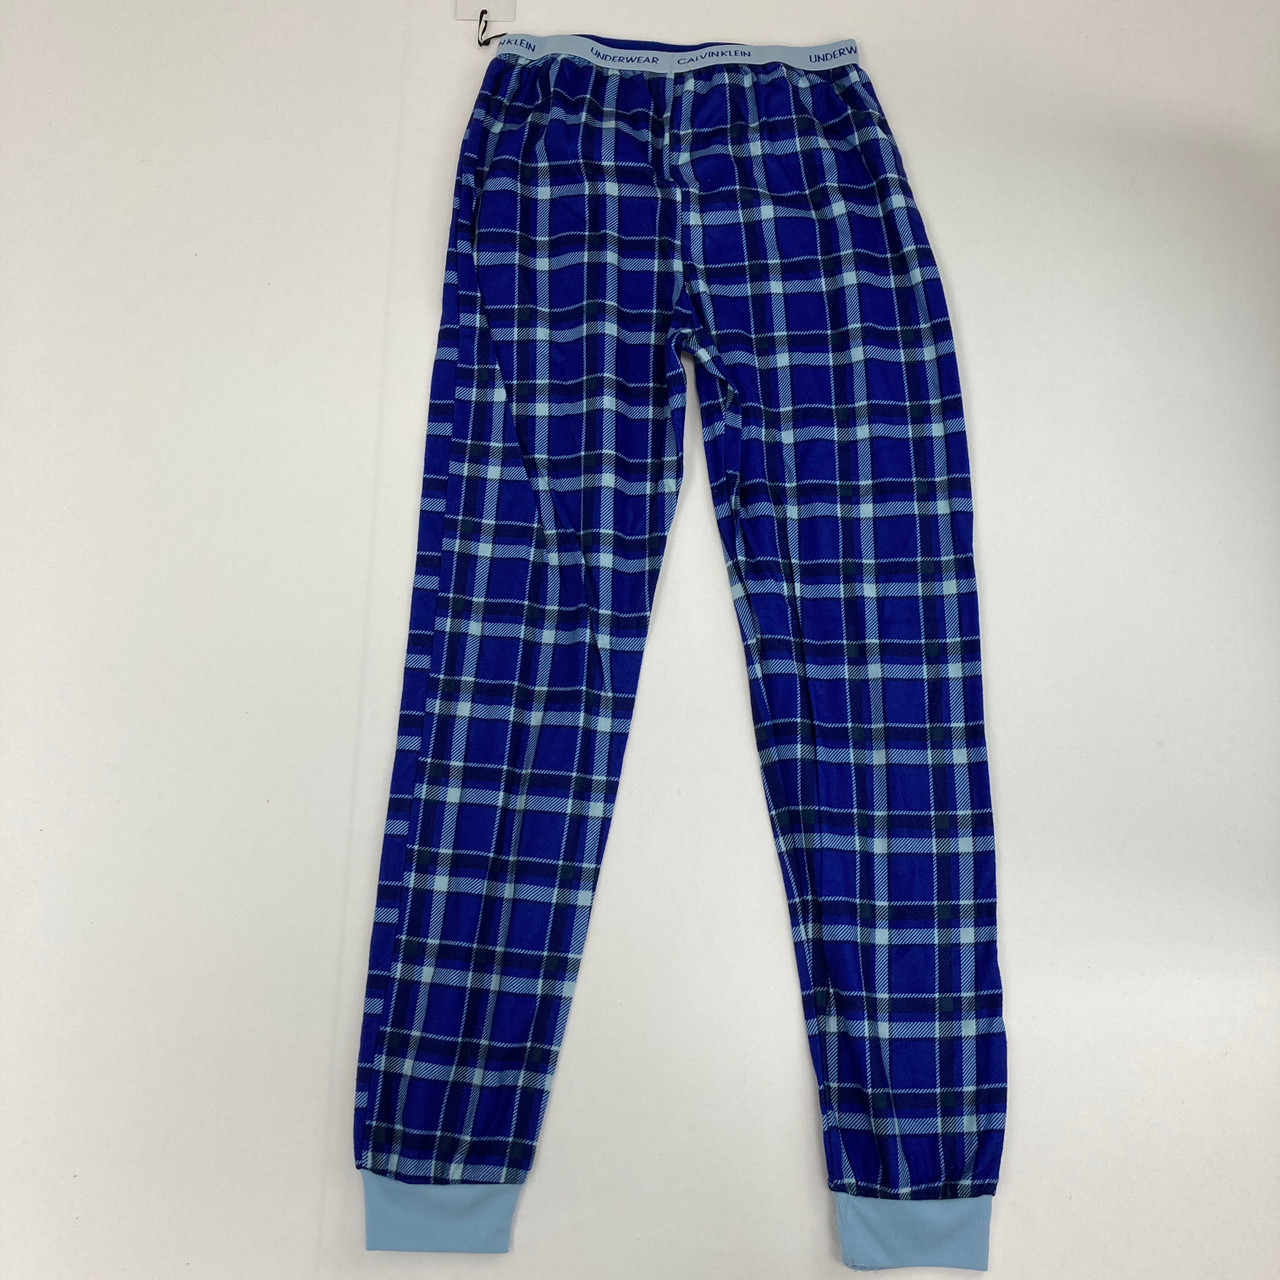 Navy Plaid Pajama Pants Large 12/14 yr